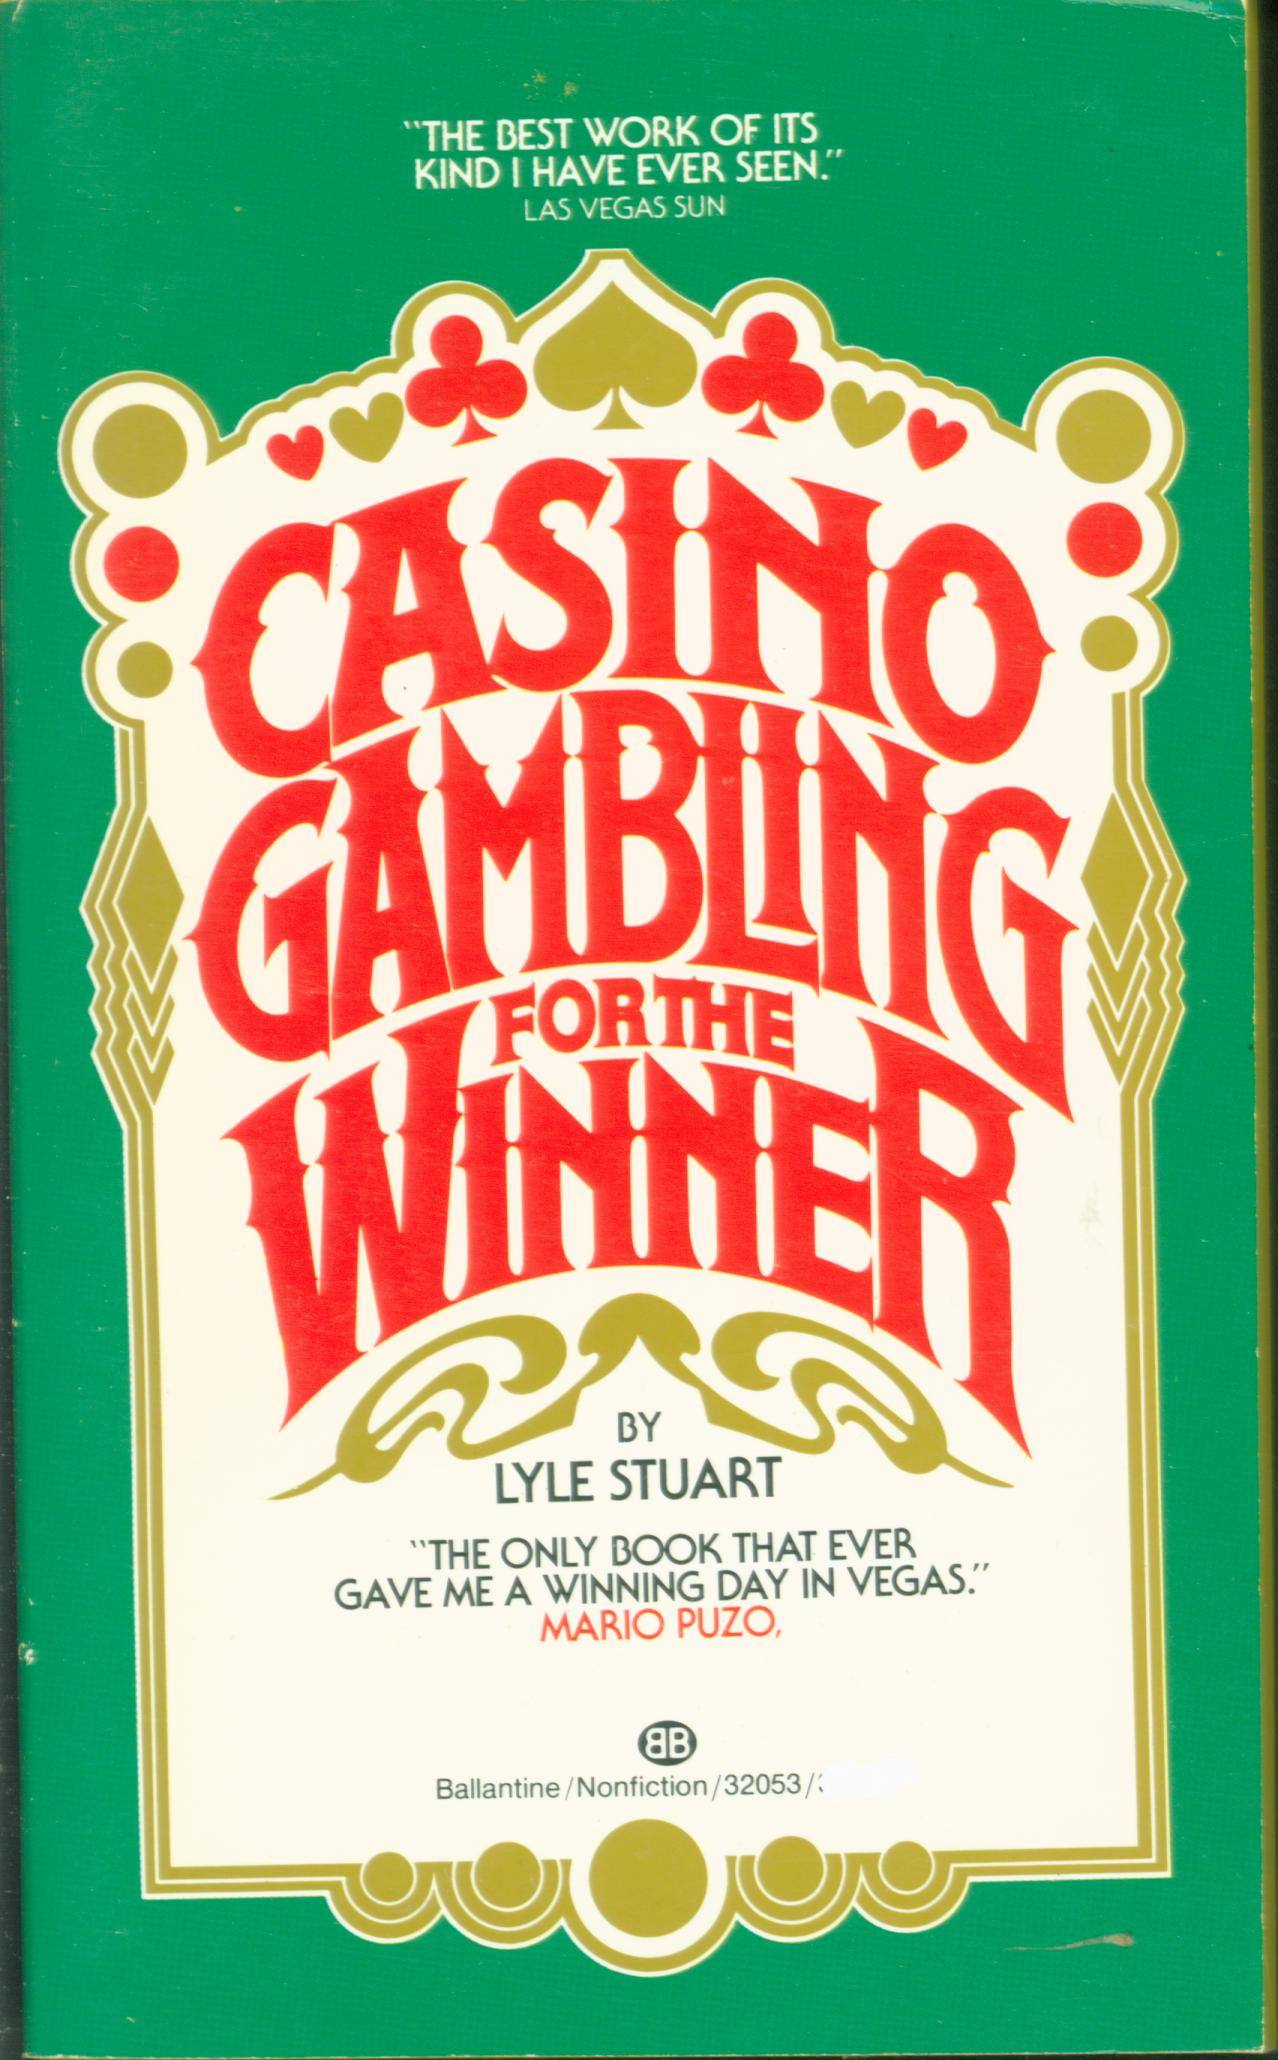 CASINO GAMBLING FOR THE WINNER. 